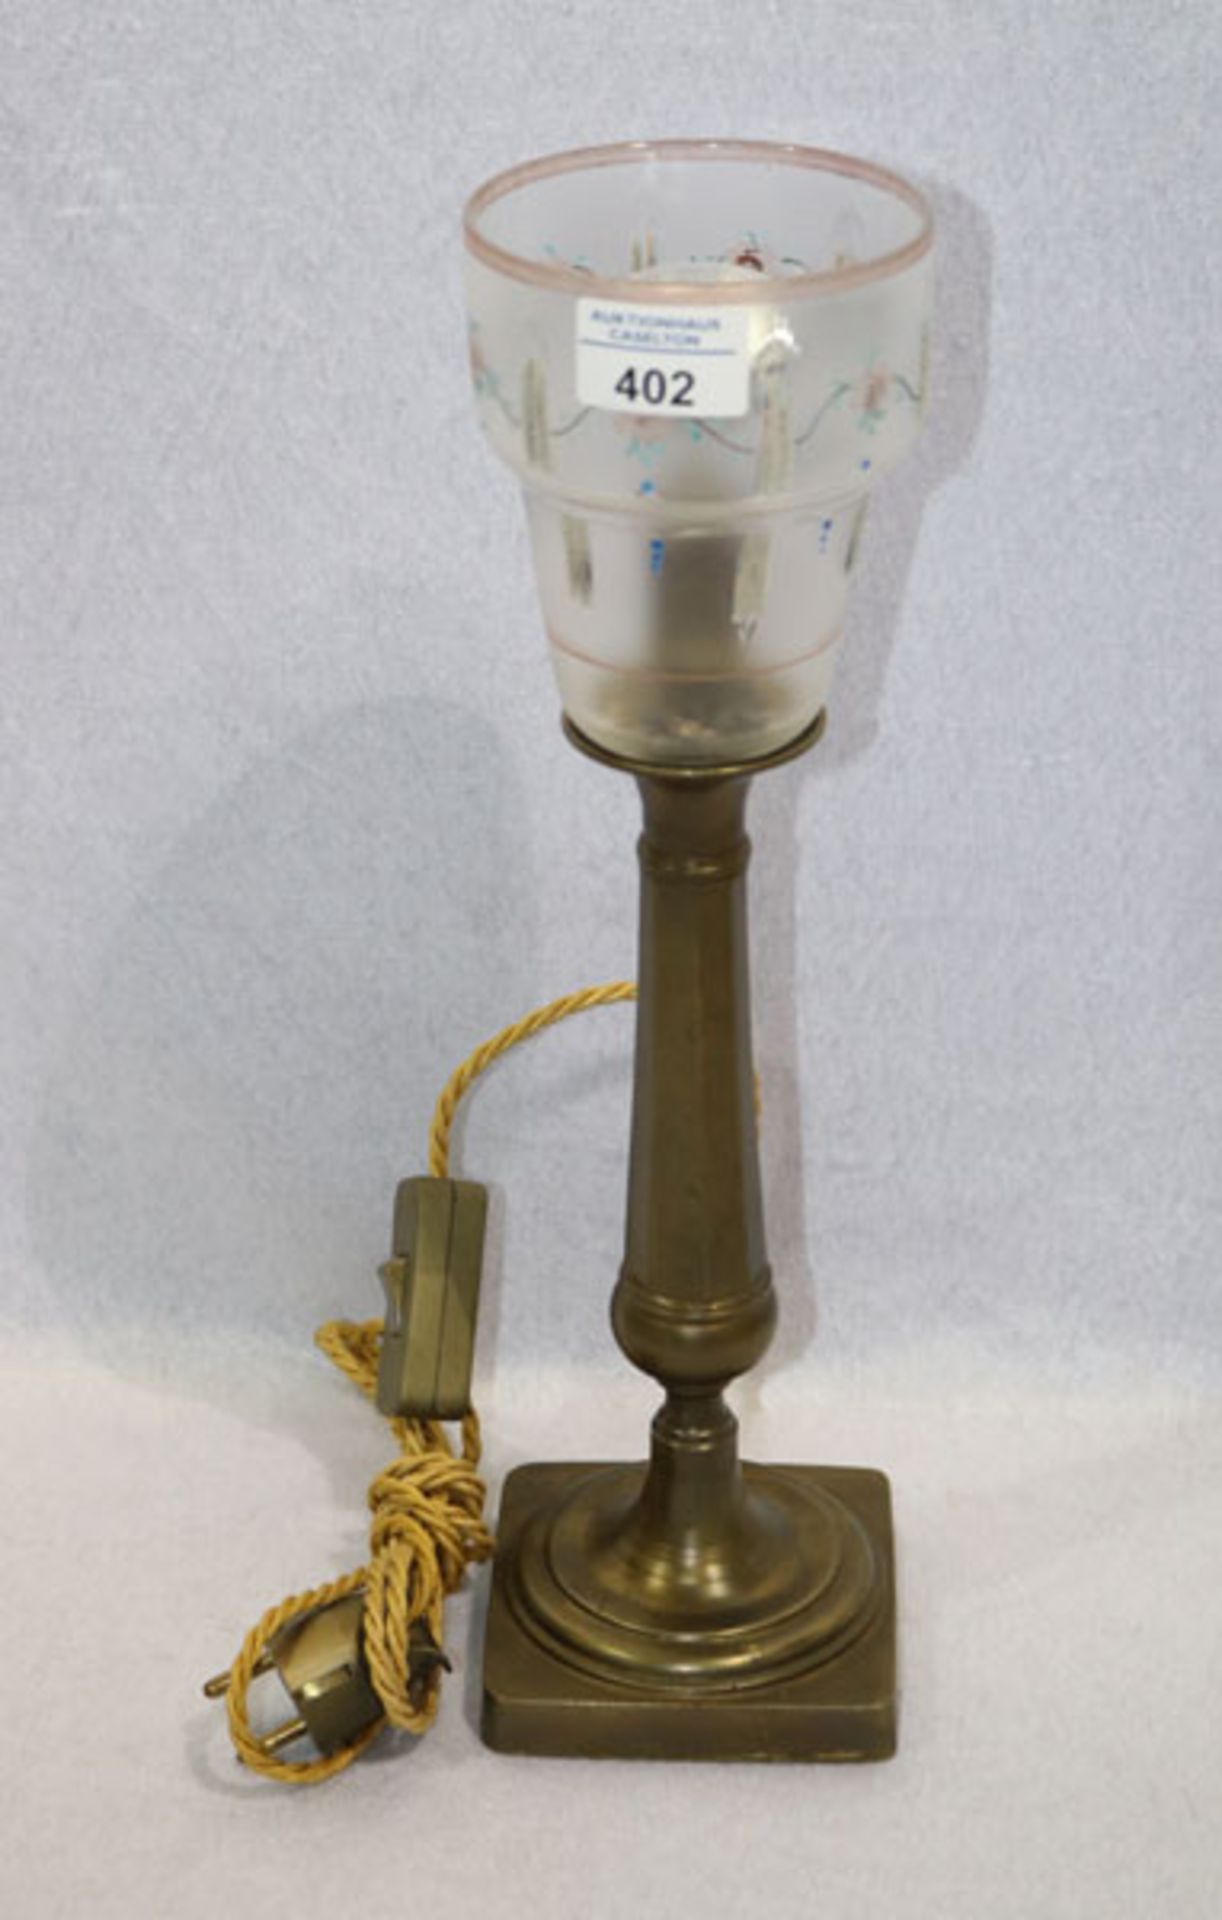 Tischlampe mit Metallfuß und Glaskelch, bemalt mit Blumendekor, teils berieben, H 40 cm, Funktion